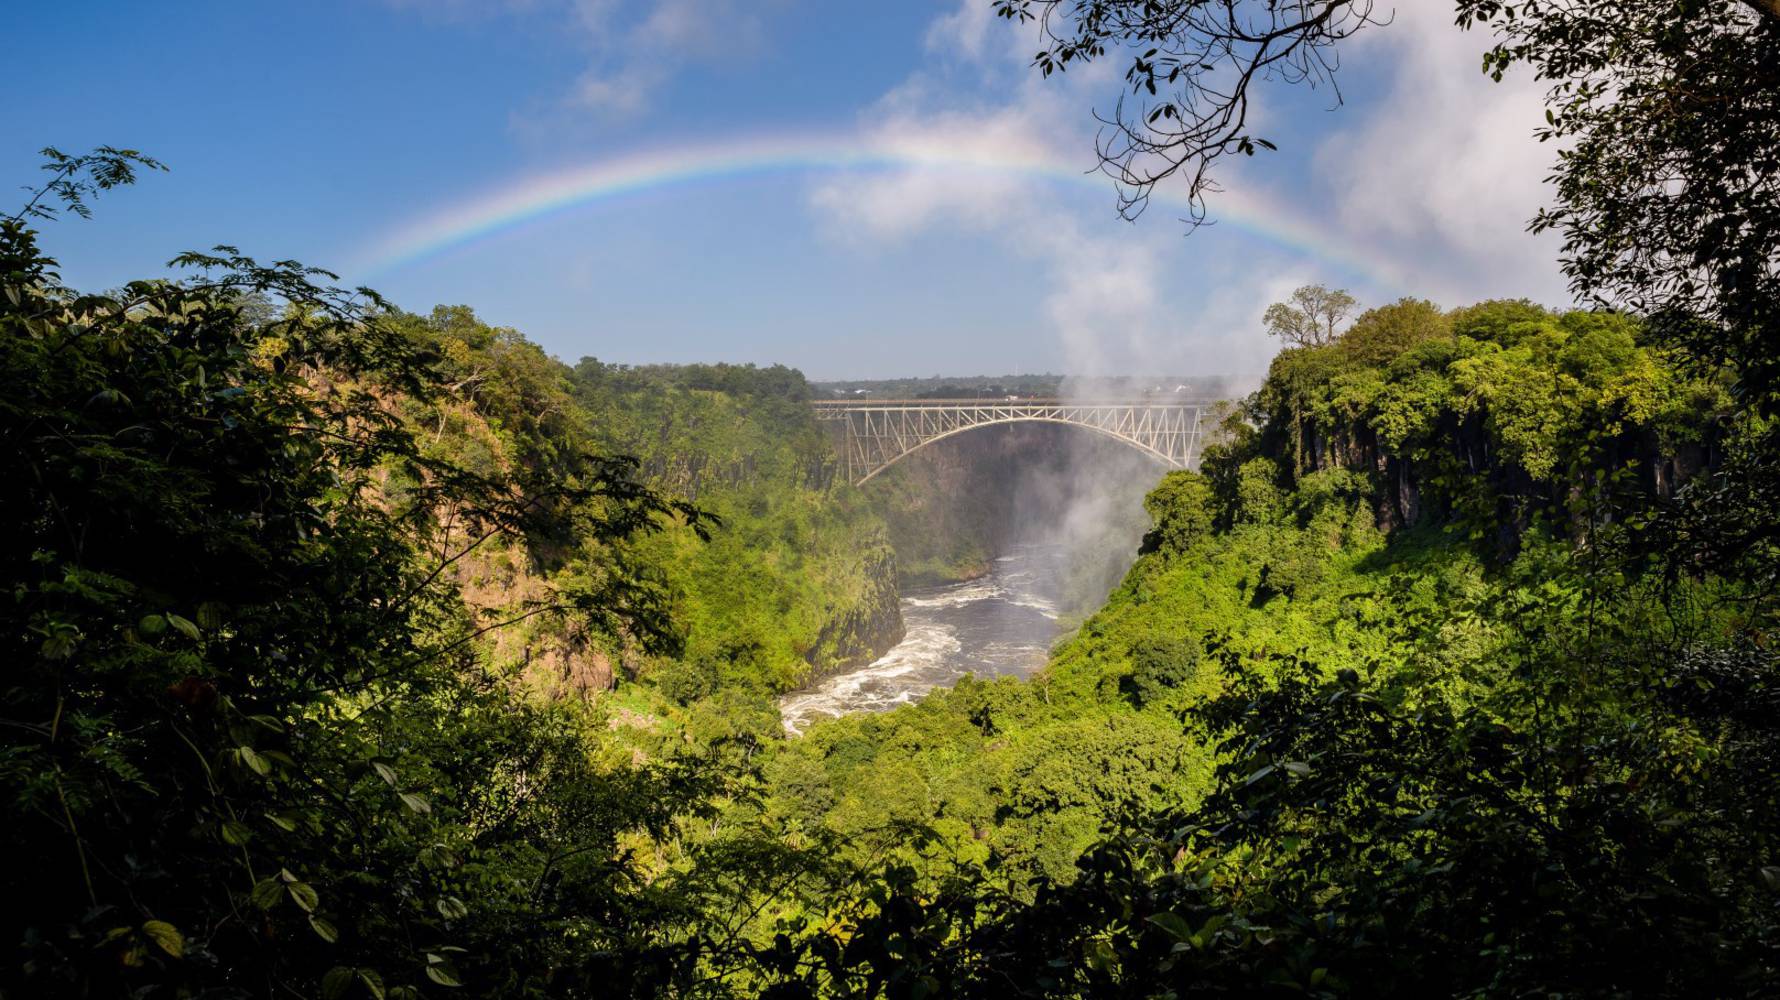 Falls_and_rainbow_Zambia_SR002044_(1)_(Large)